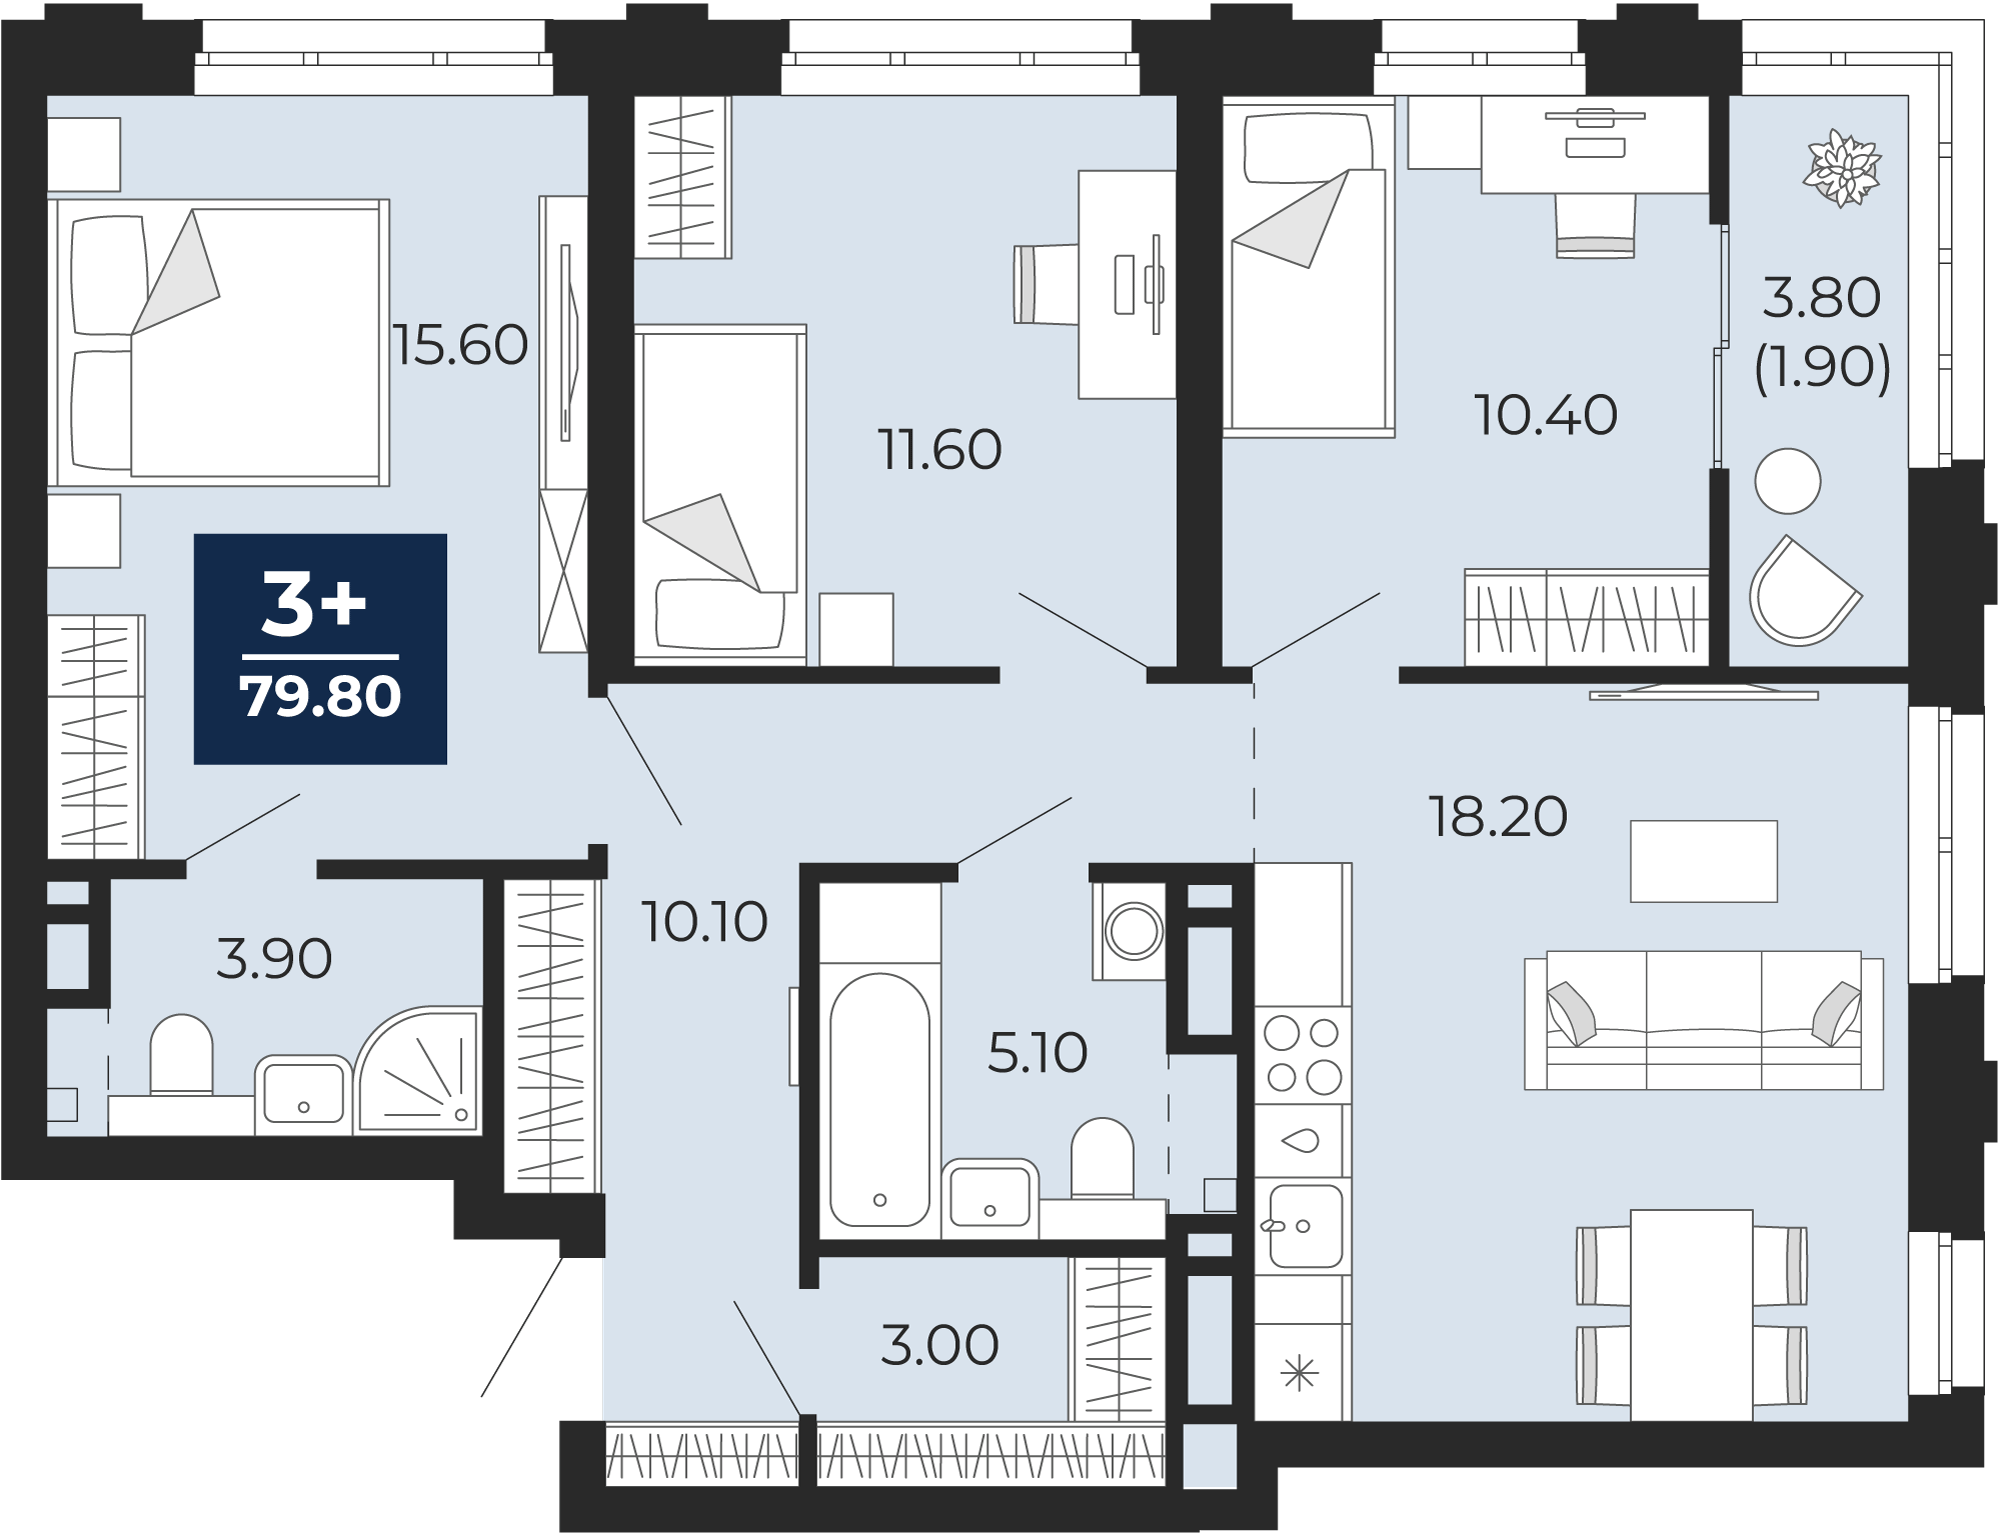 Квартира № 265, 3-комнатная, 79.8 кв. м, 3 этаж